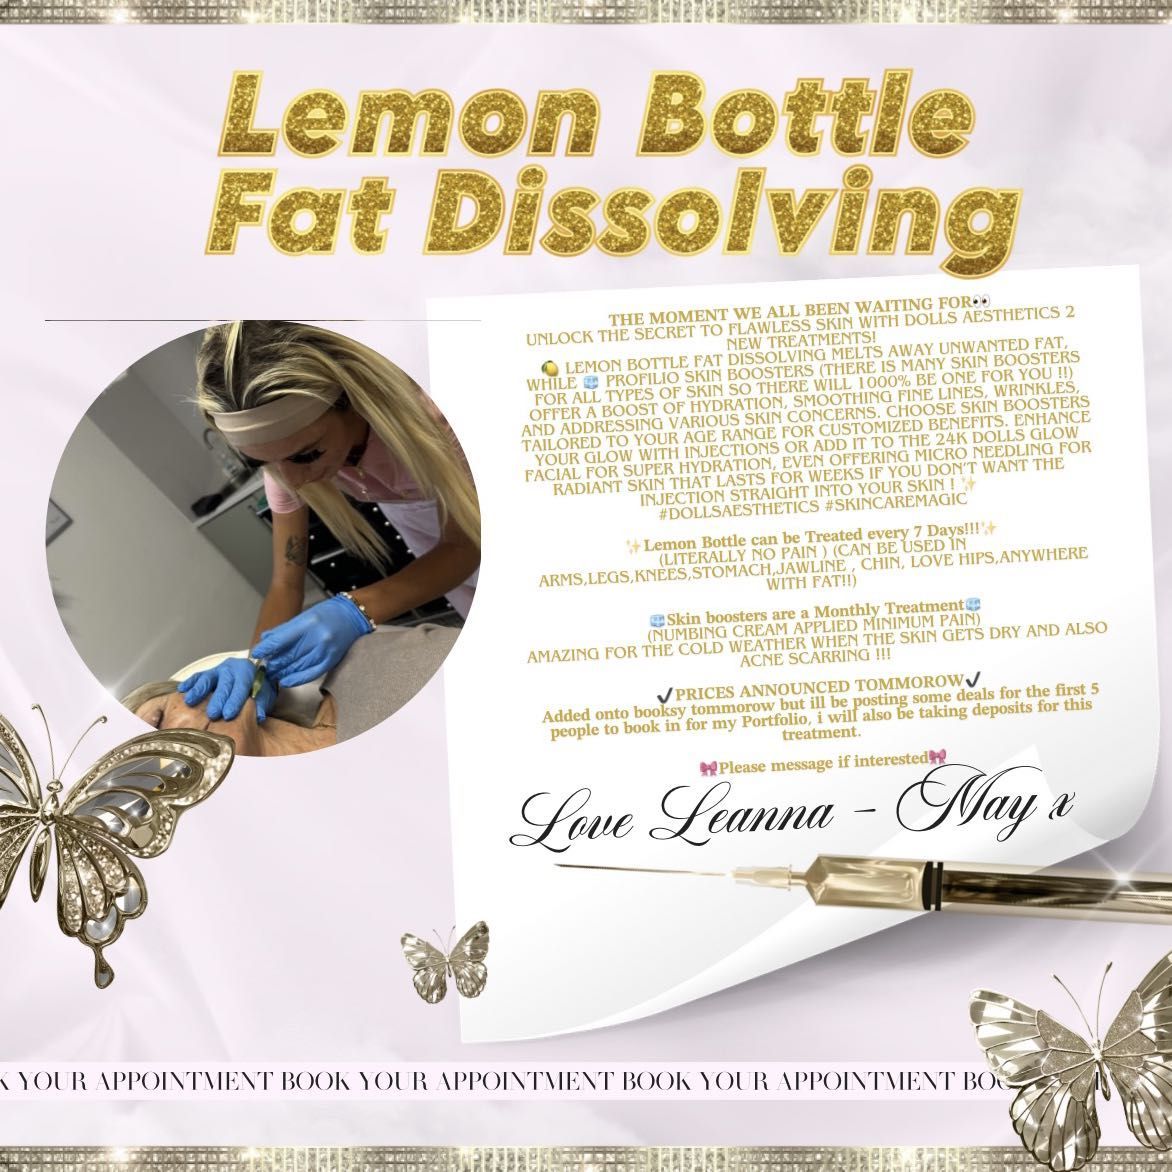 Lemon Bottle Small area🍋 portfolio